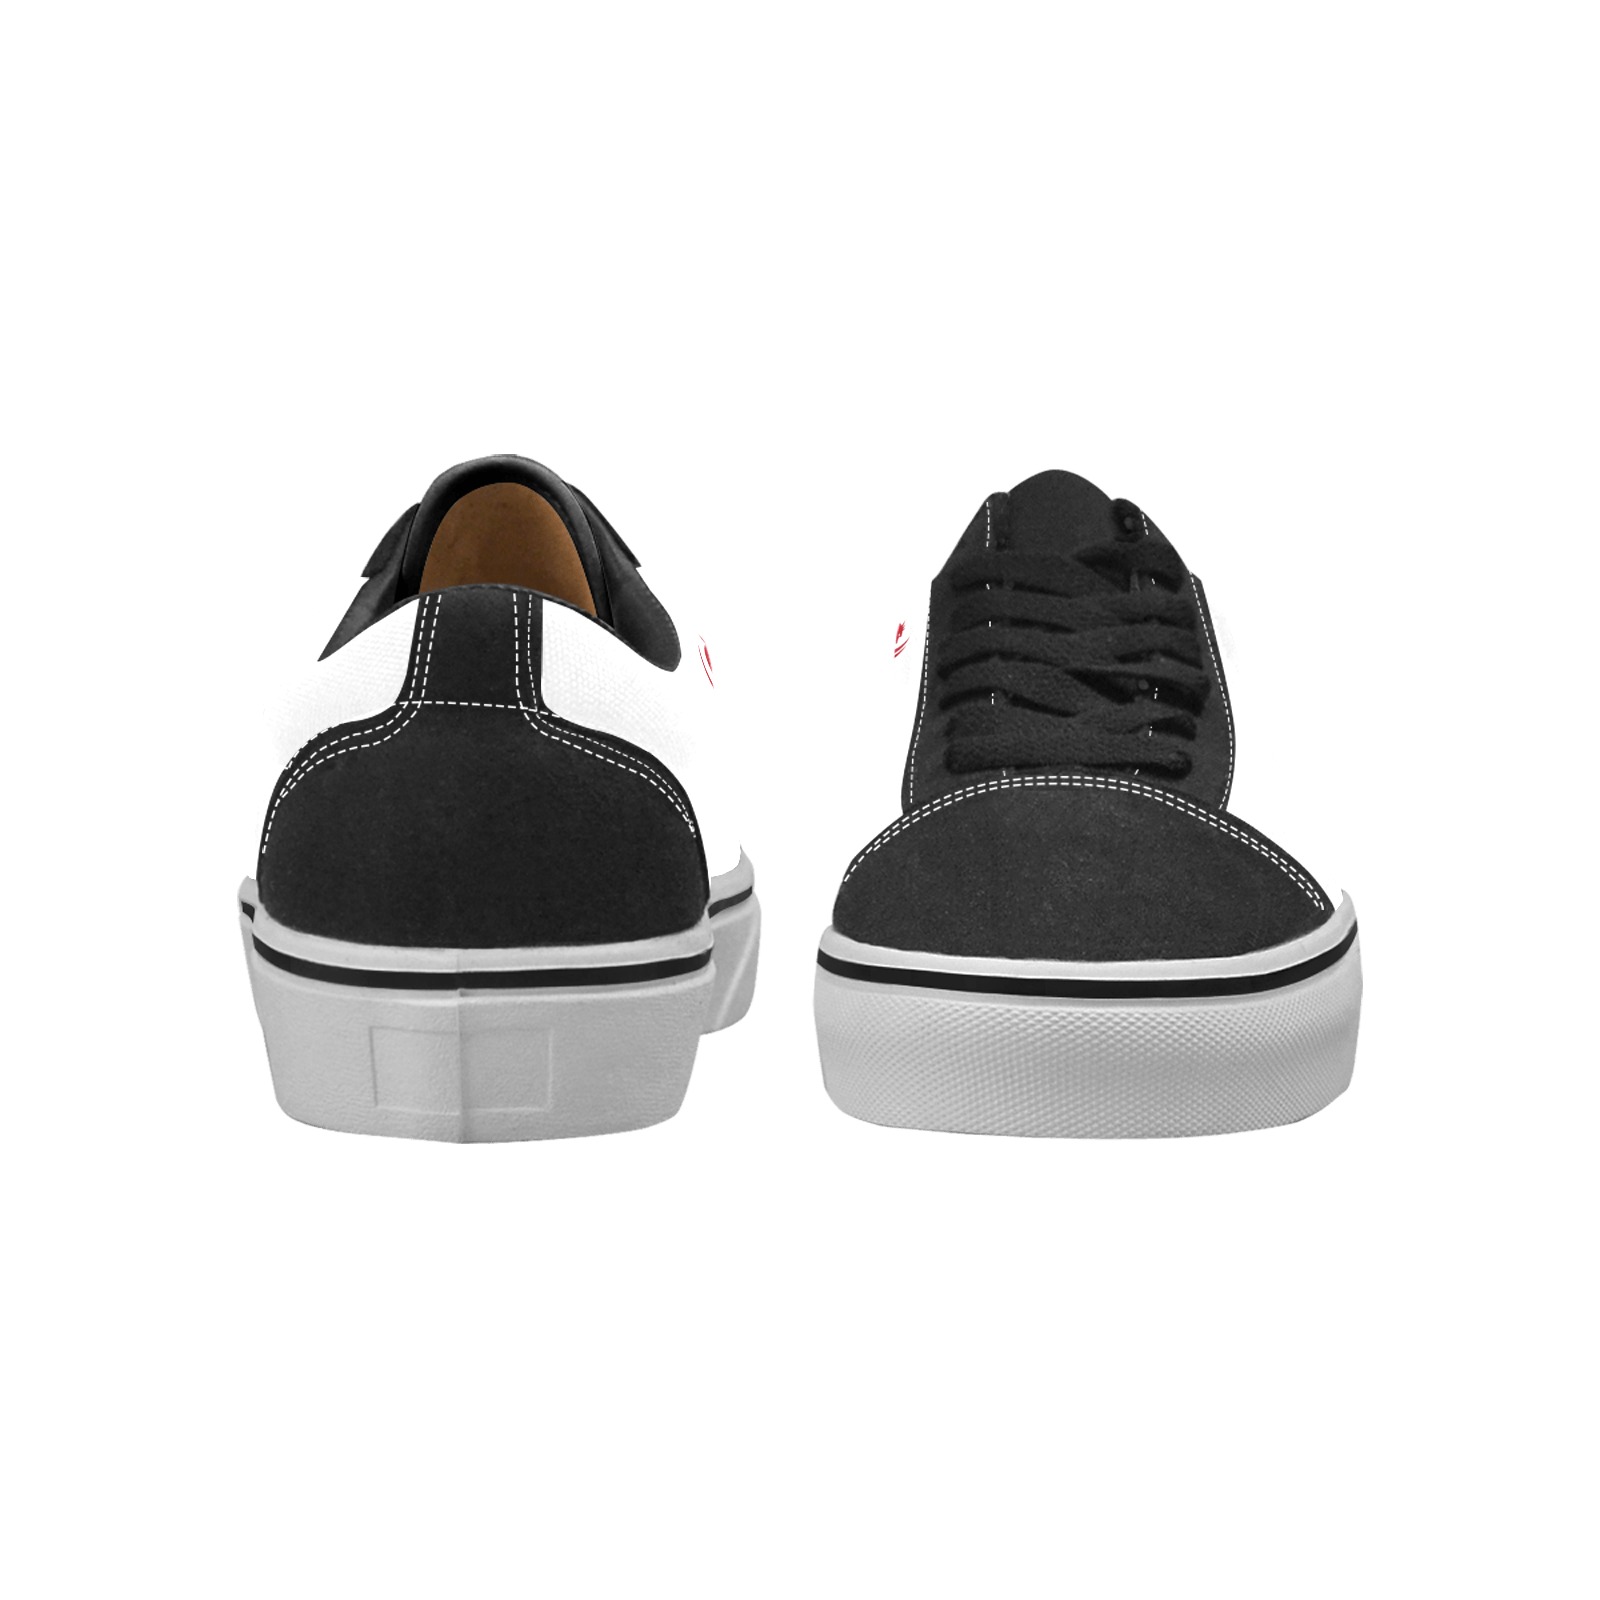 Logo sneaker low Women's Low Top Skateboarding Shoes (Model E001-2)